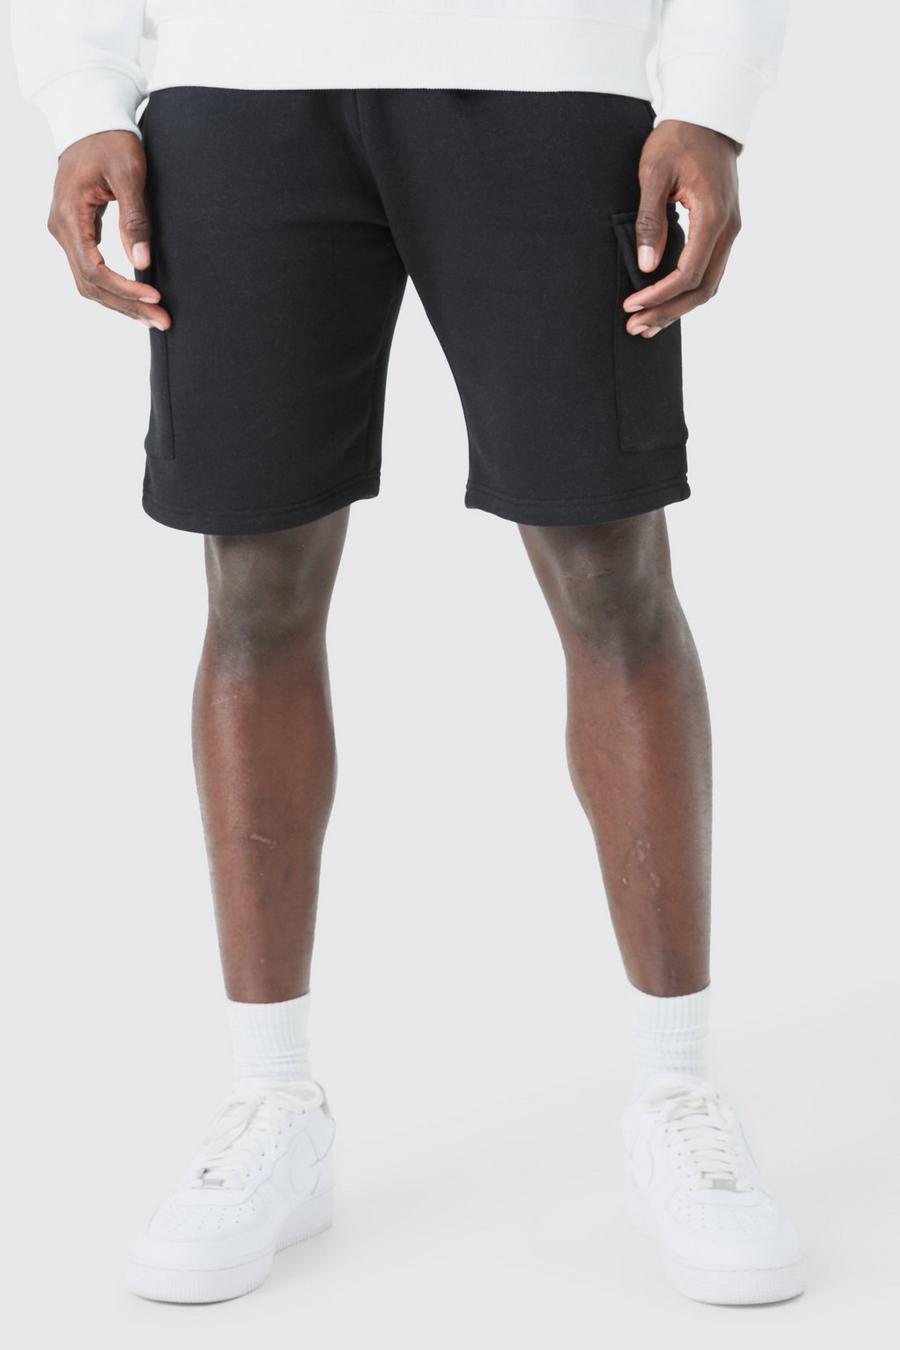 Pantaloncini medi Cargo Basic Slim Fit in jersey, Black negro